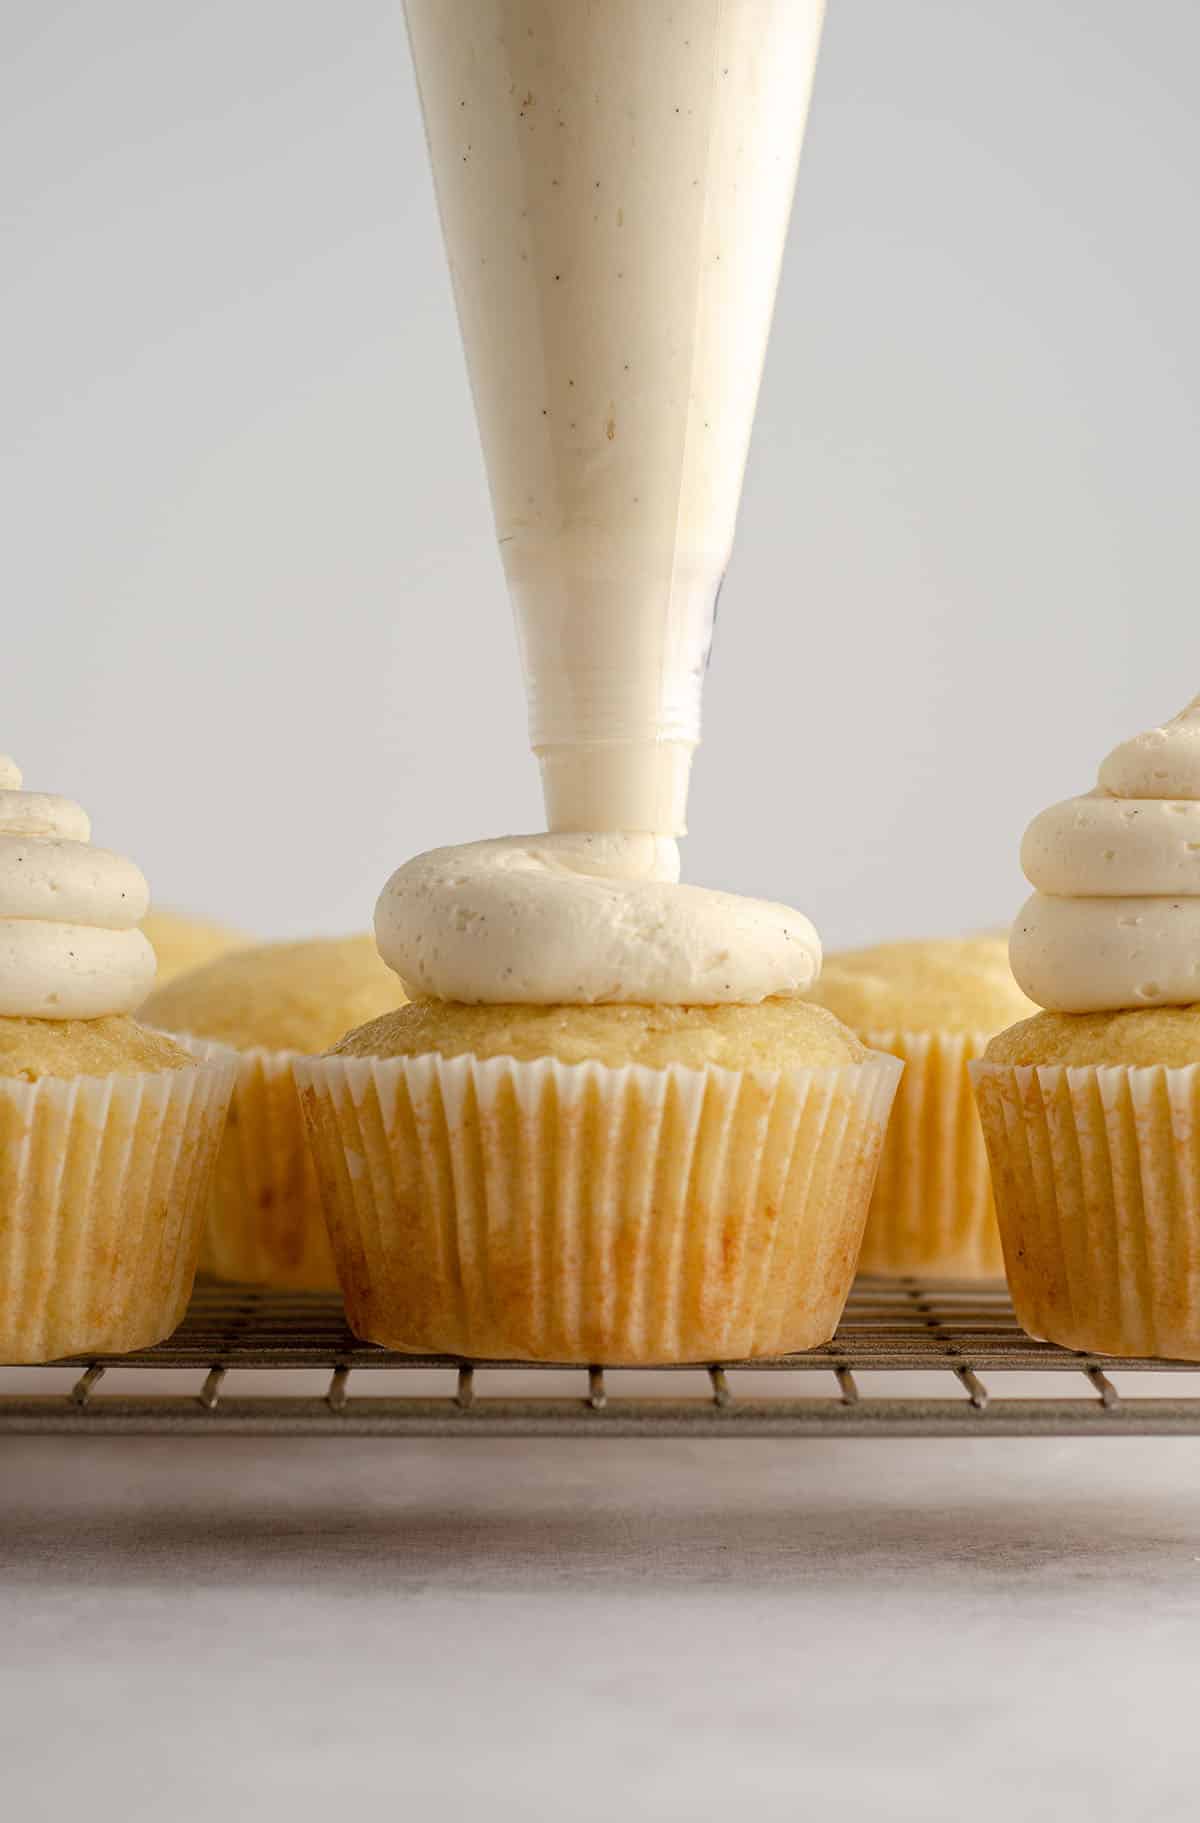 a piping bag piping vanilla buttercream onto the top of a vanilla bean cupcake